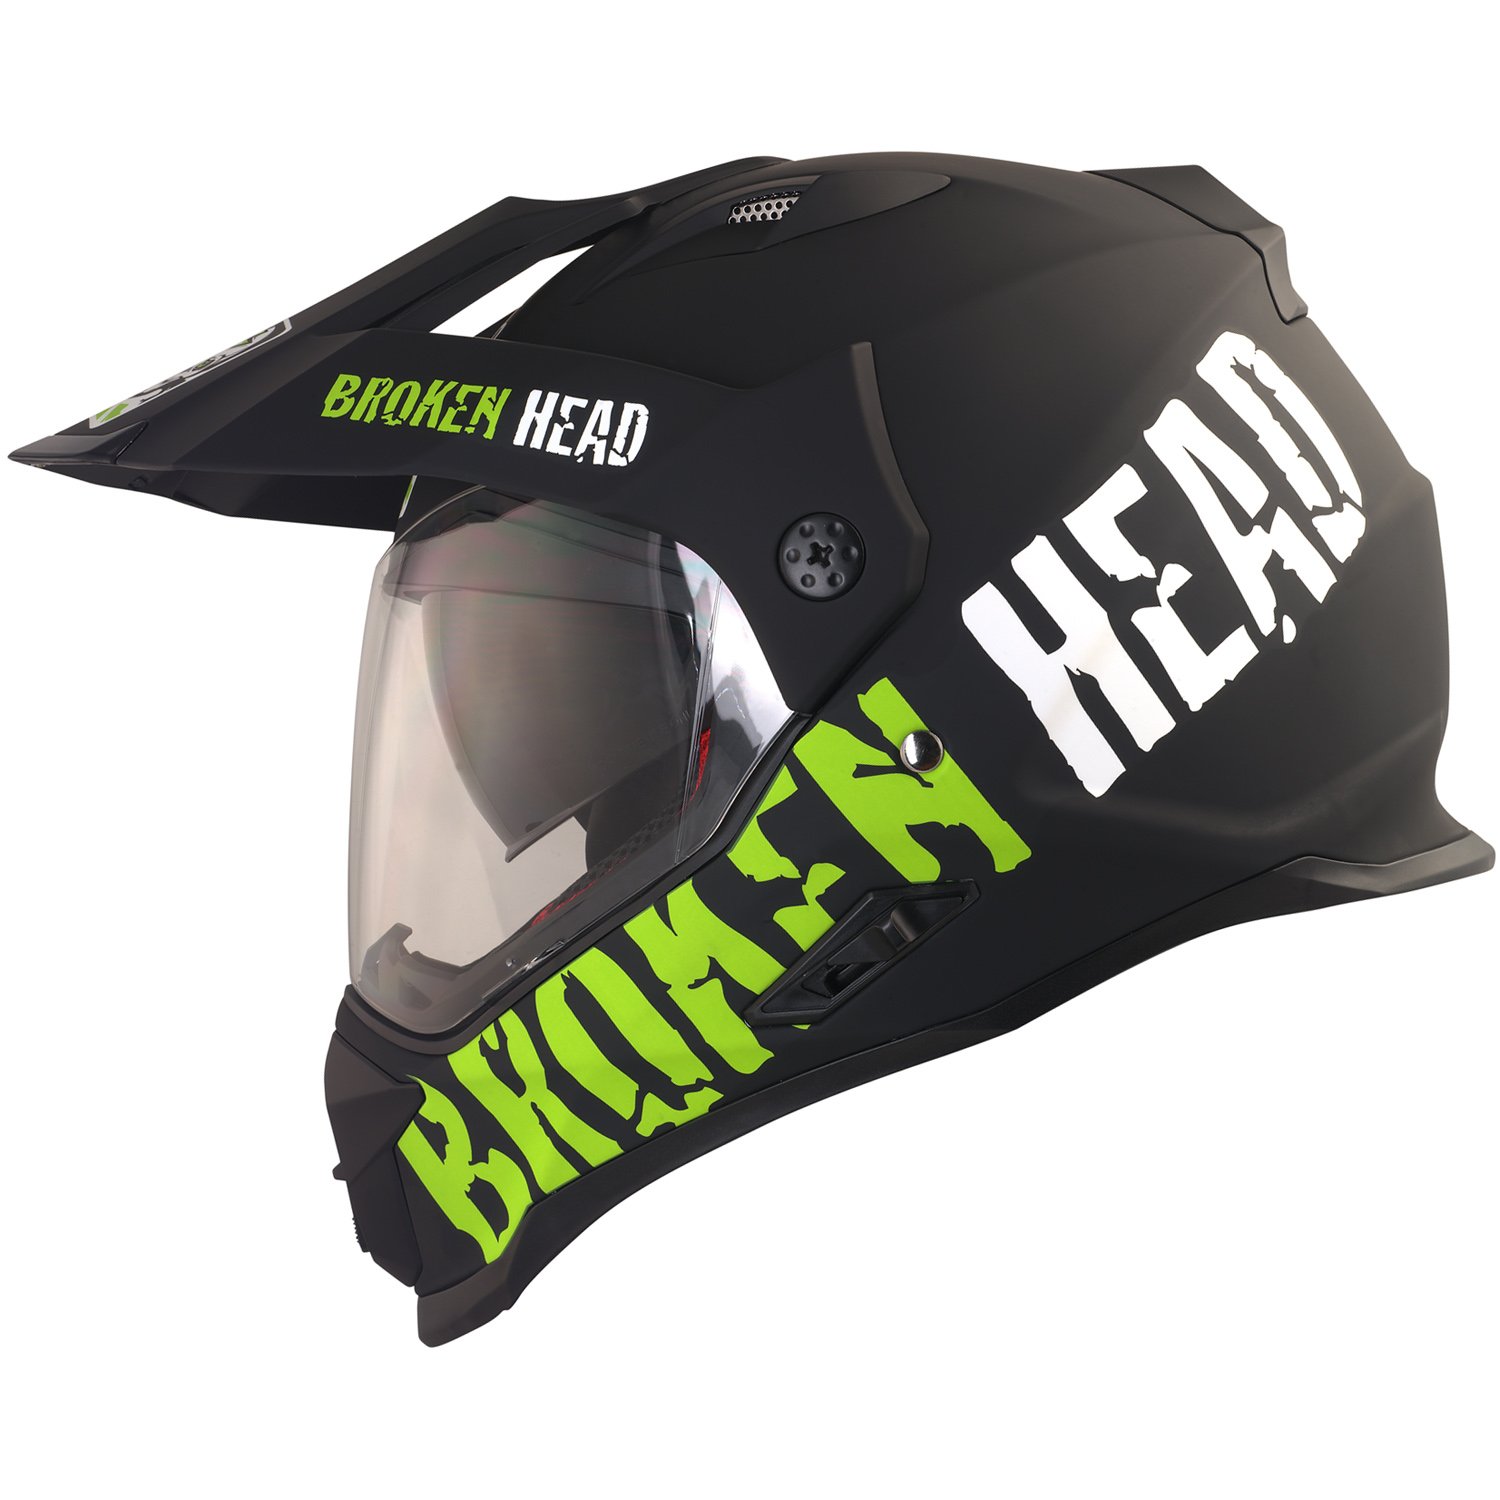 Broken Head made2rebel Motocross-Helm grün mit Visier - Enduro-Helm - MX Cross-Helm mit Sonnenblende - Quad-Helm (L 59-60 cm) von Broken Head